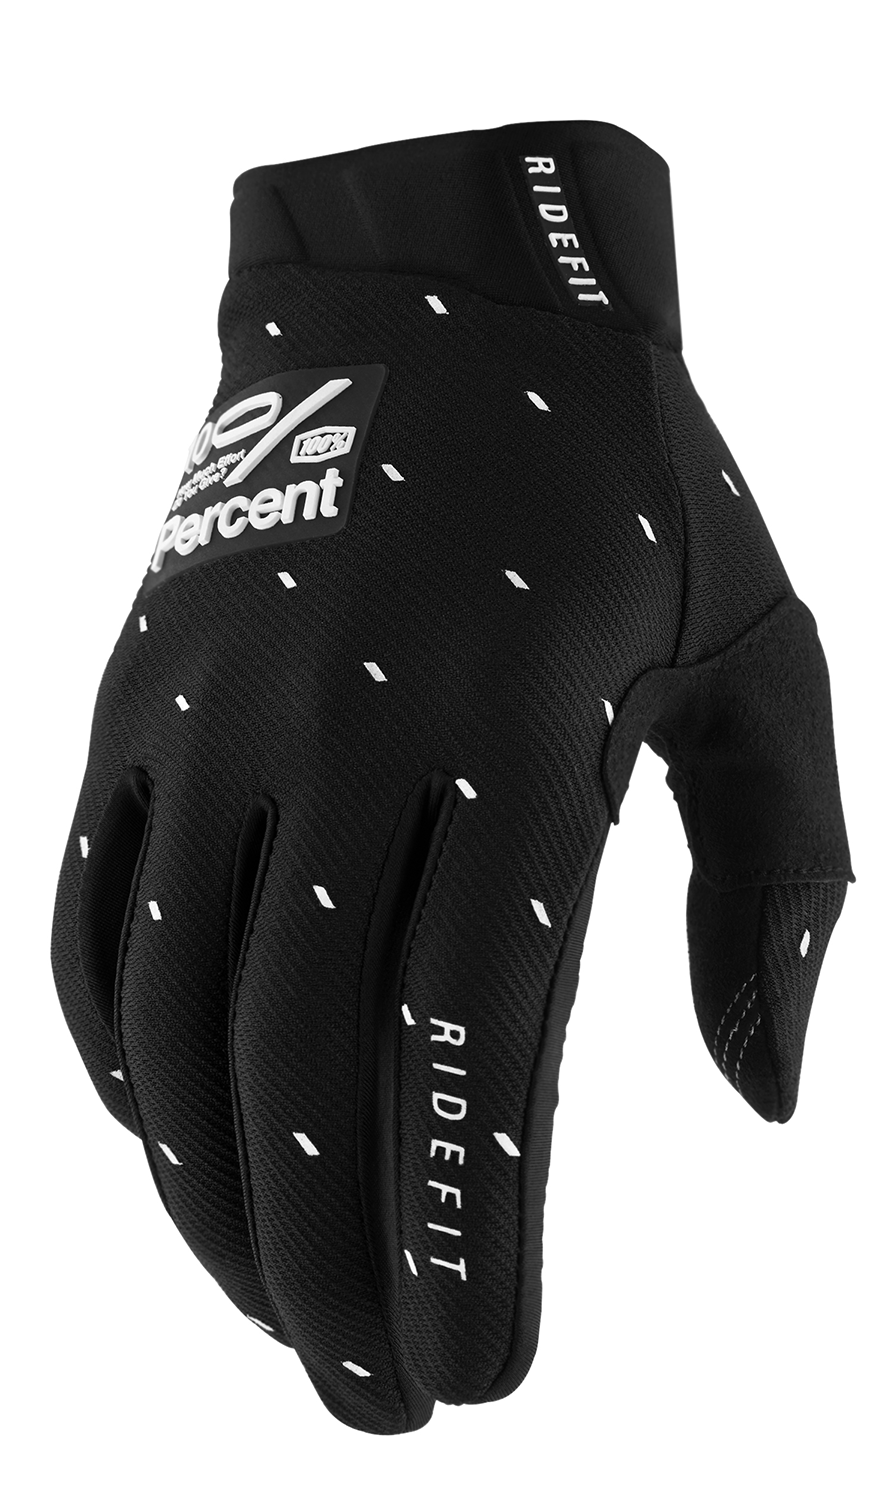 Ridefit Gloves - Slasher Black - XL